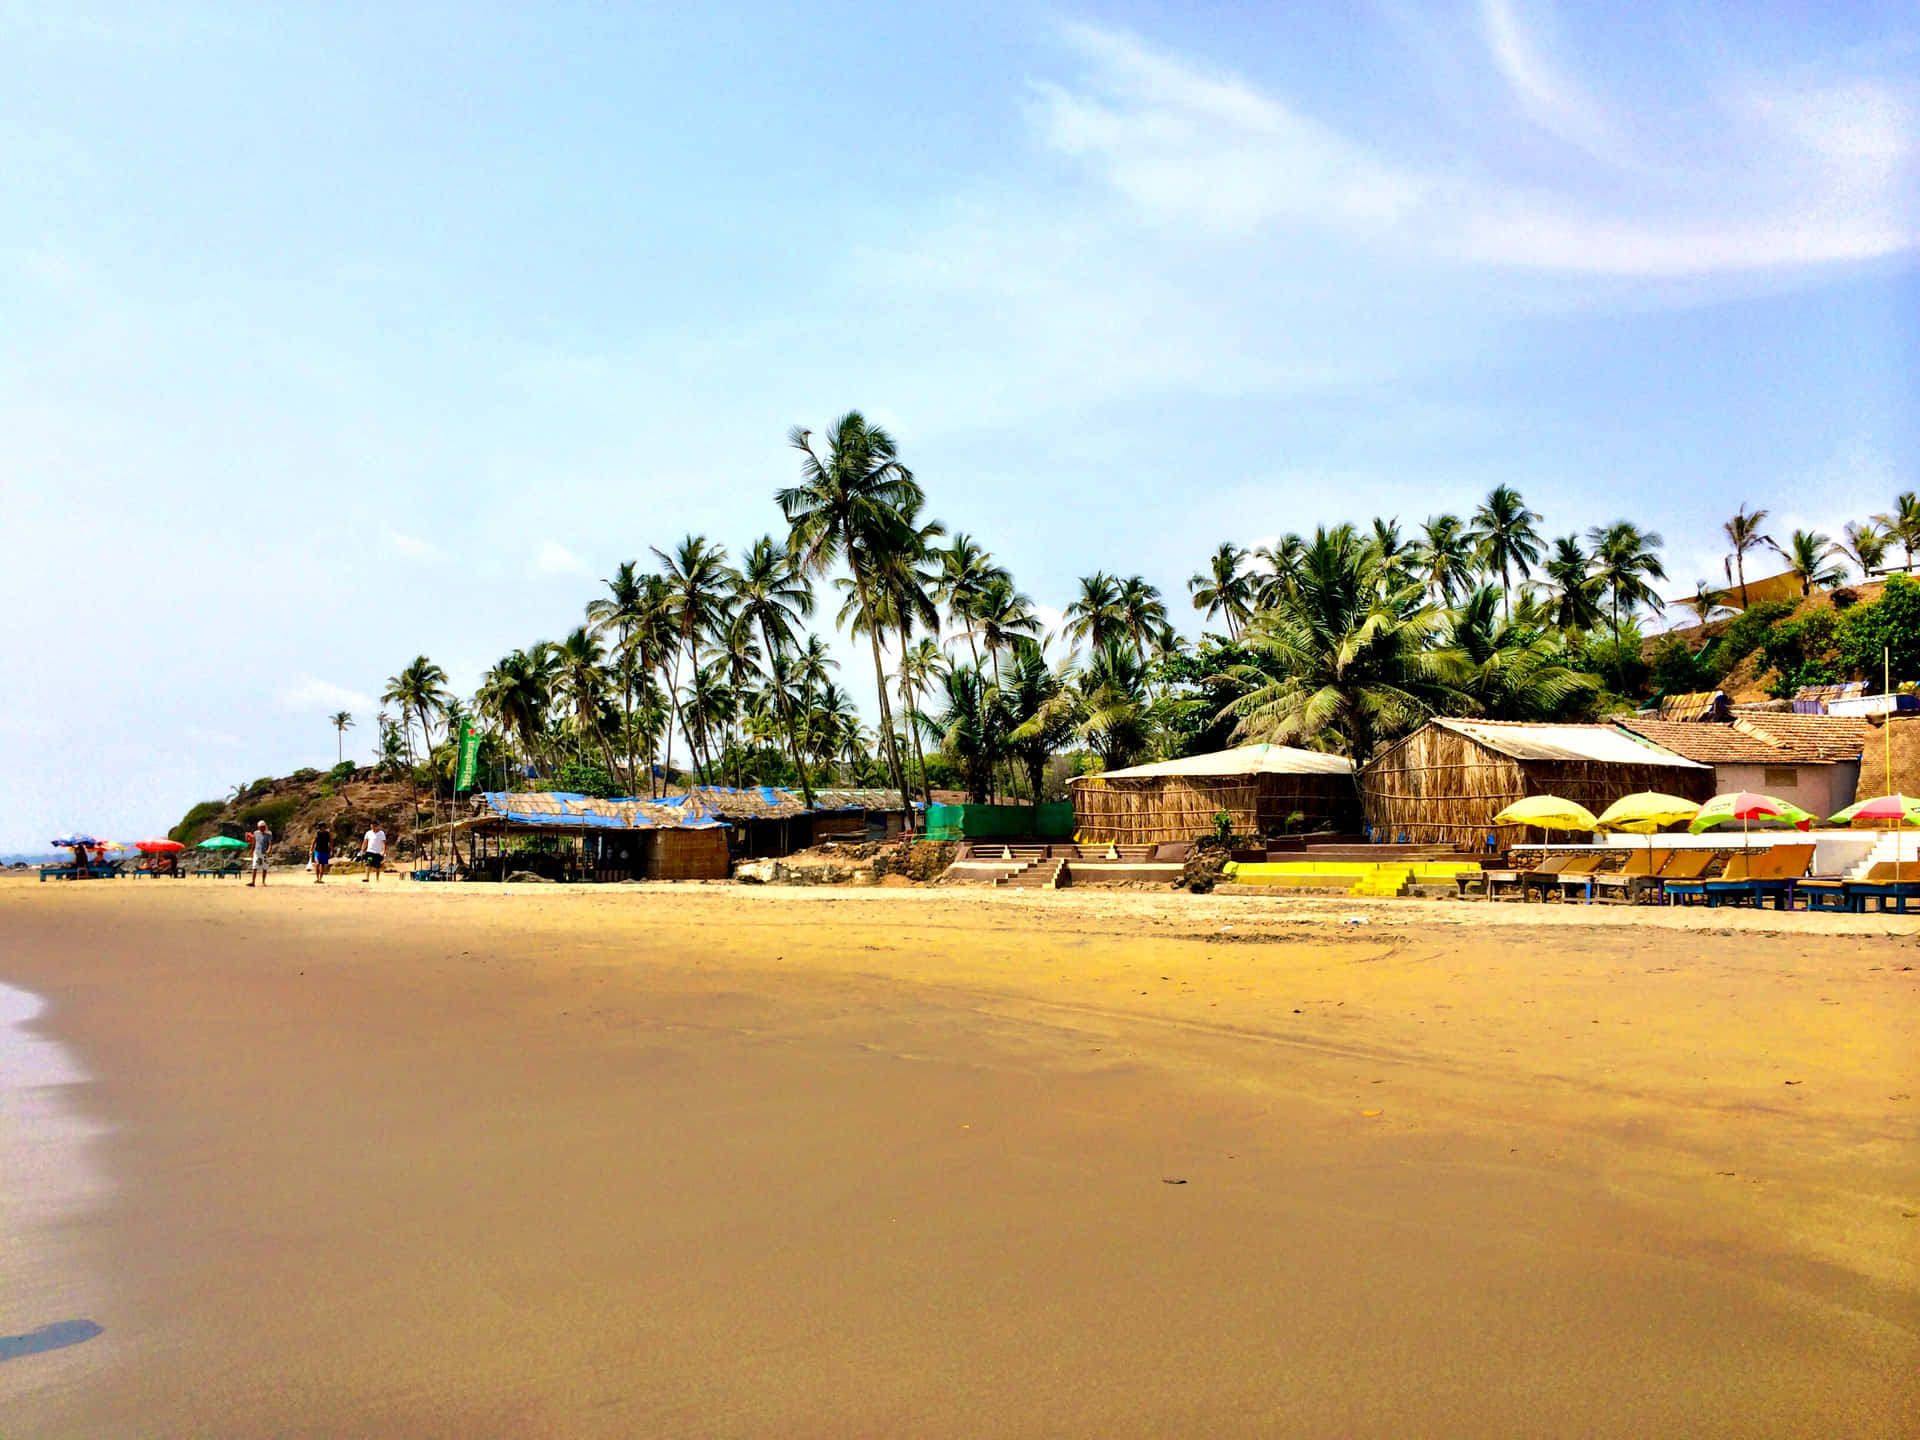 Njutav En Paus Från Stadslivet Med En Resa Till Den Fridfulla Goa-stranden